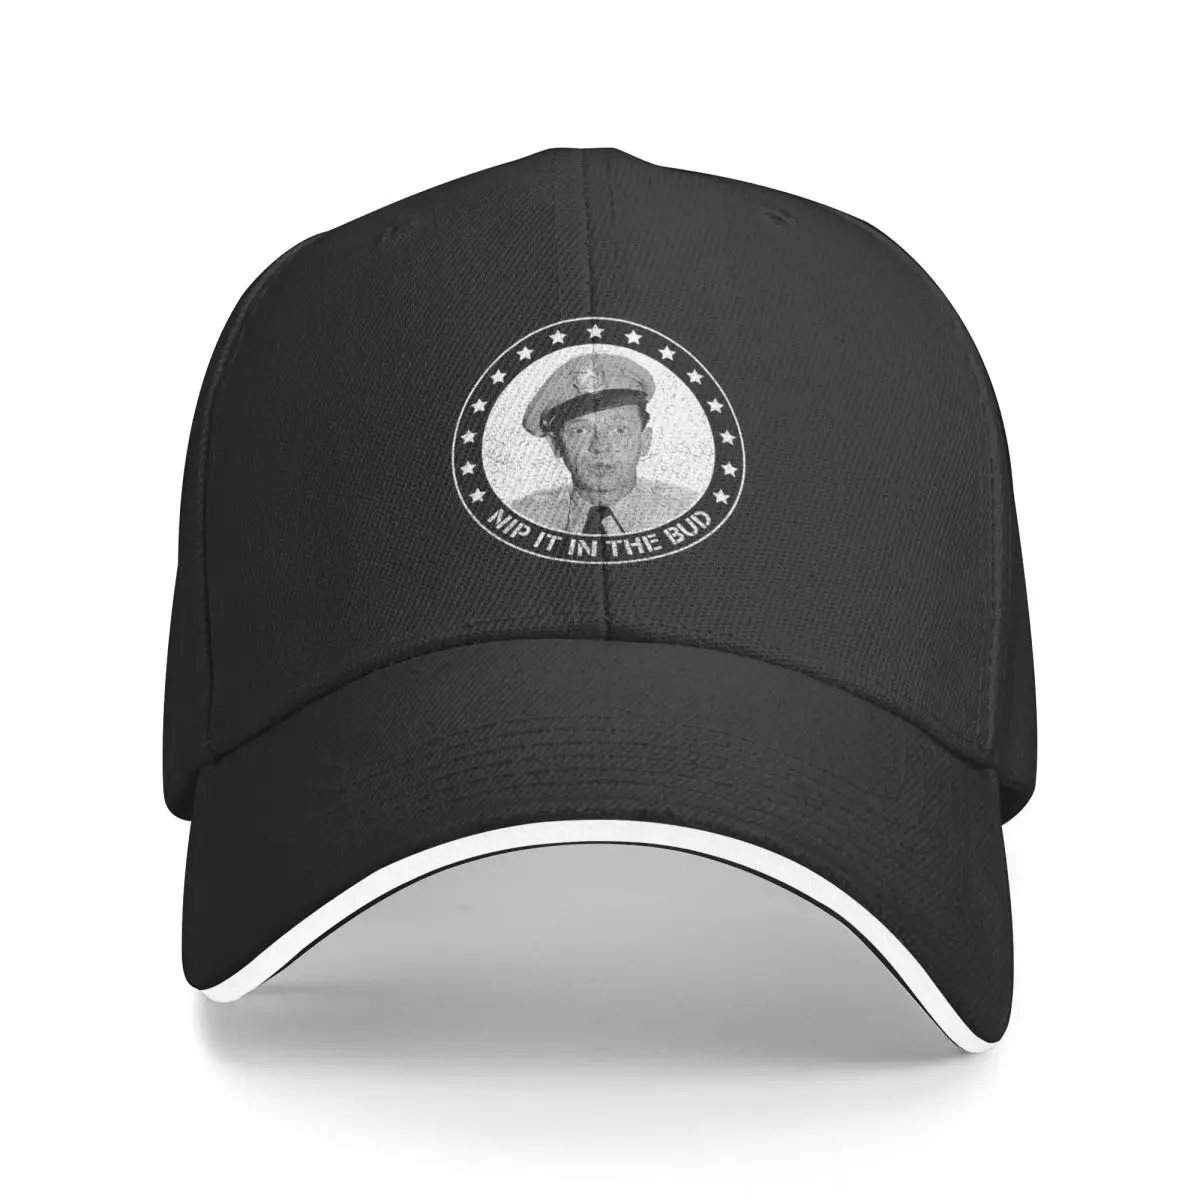 

New Barney Fife - Nip it in the Bud Baseball Cap foam party hats Trucker Hat Hat Luxury Brand New Hat Hat Male Women's